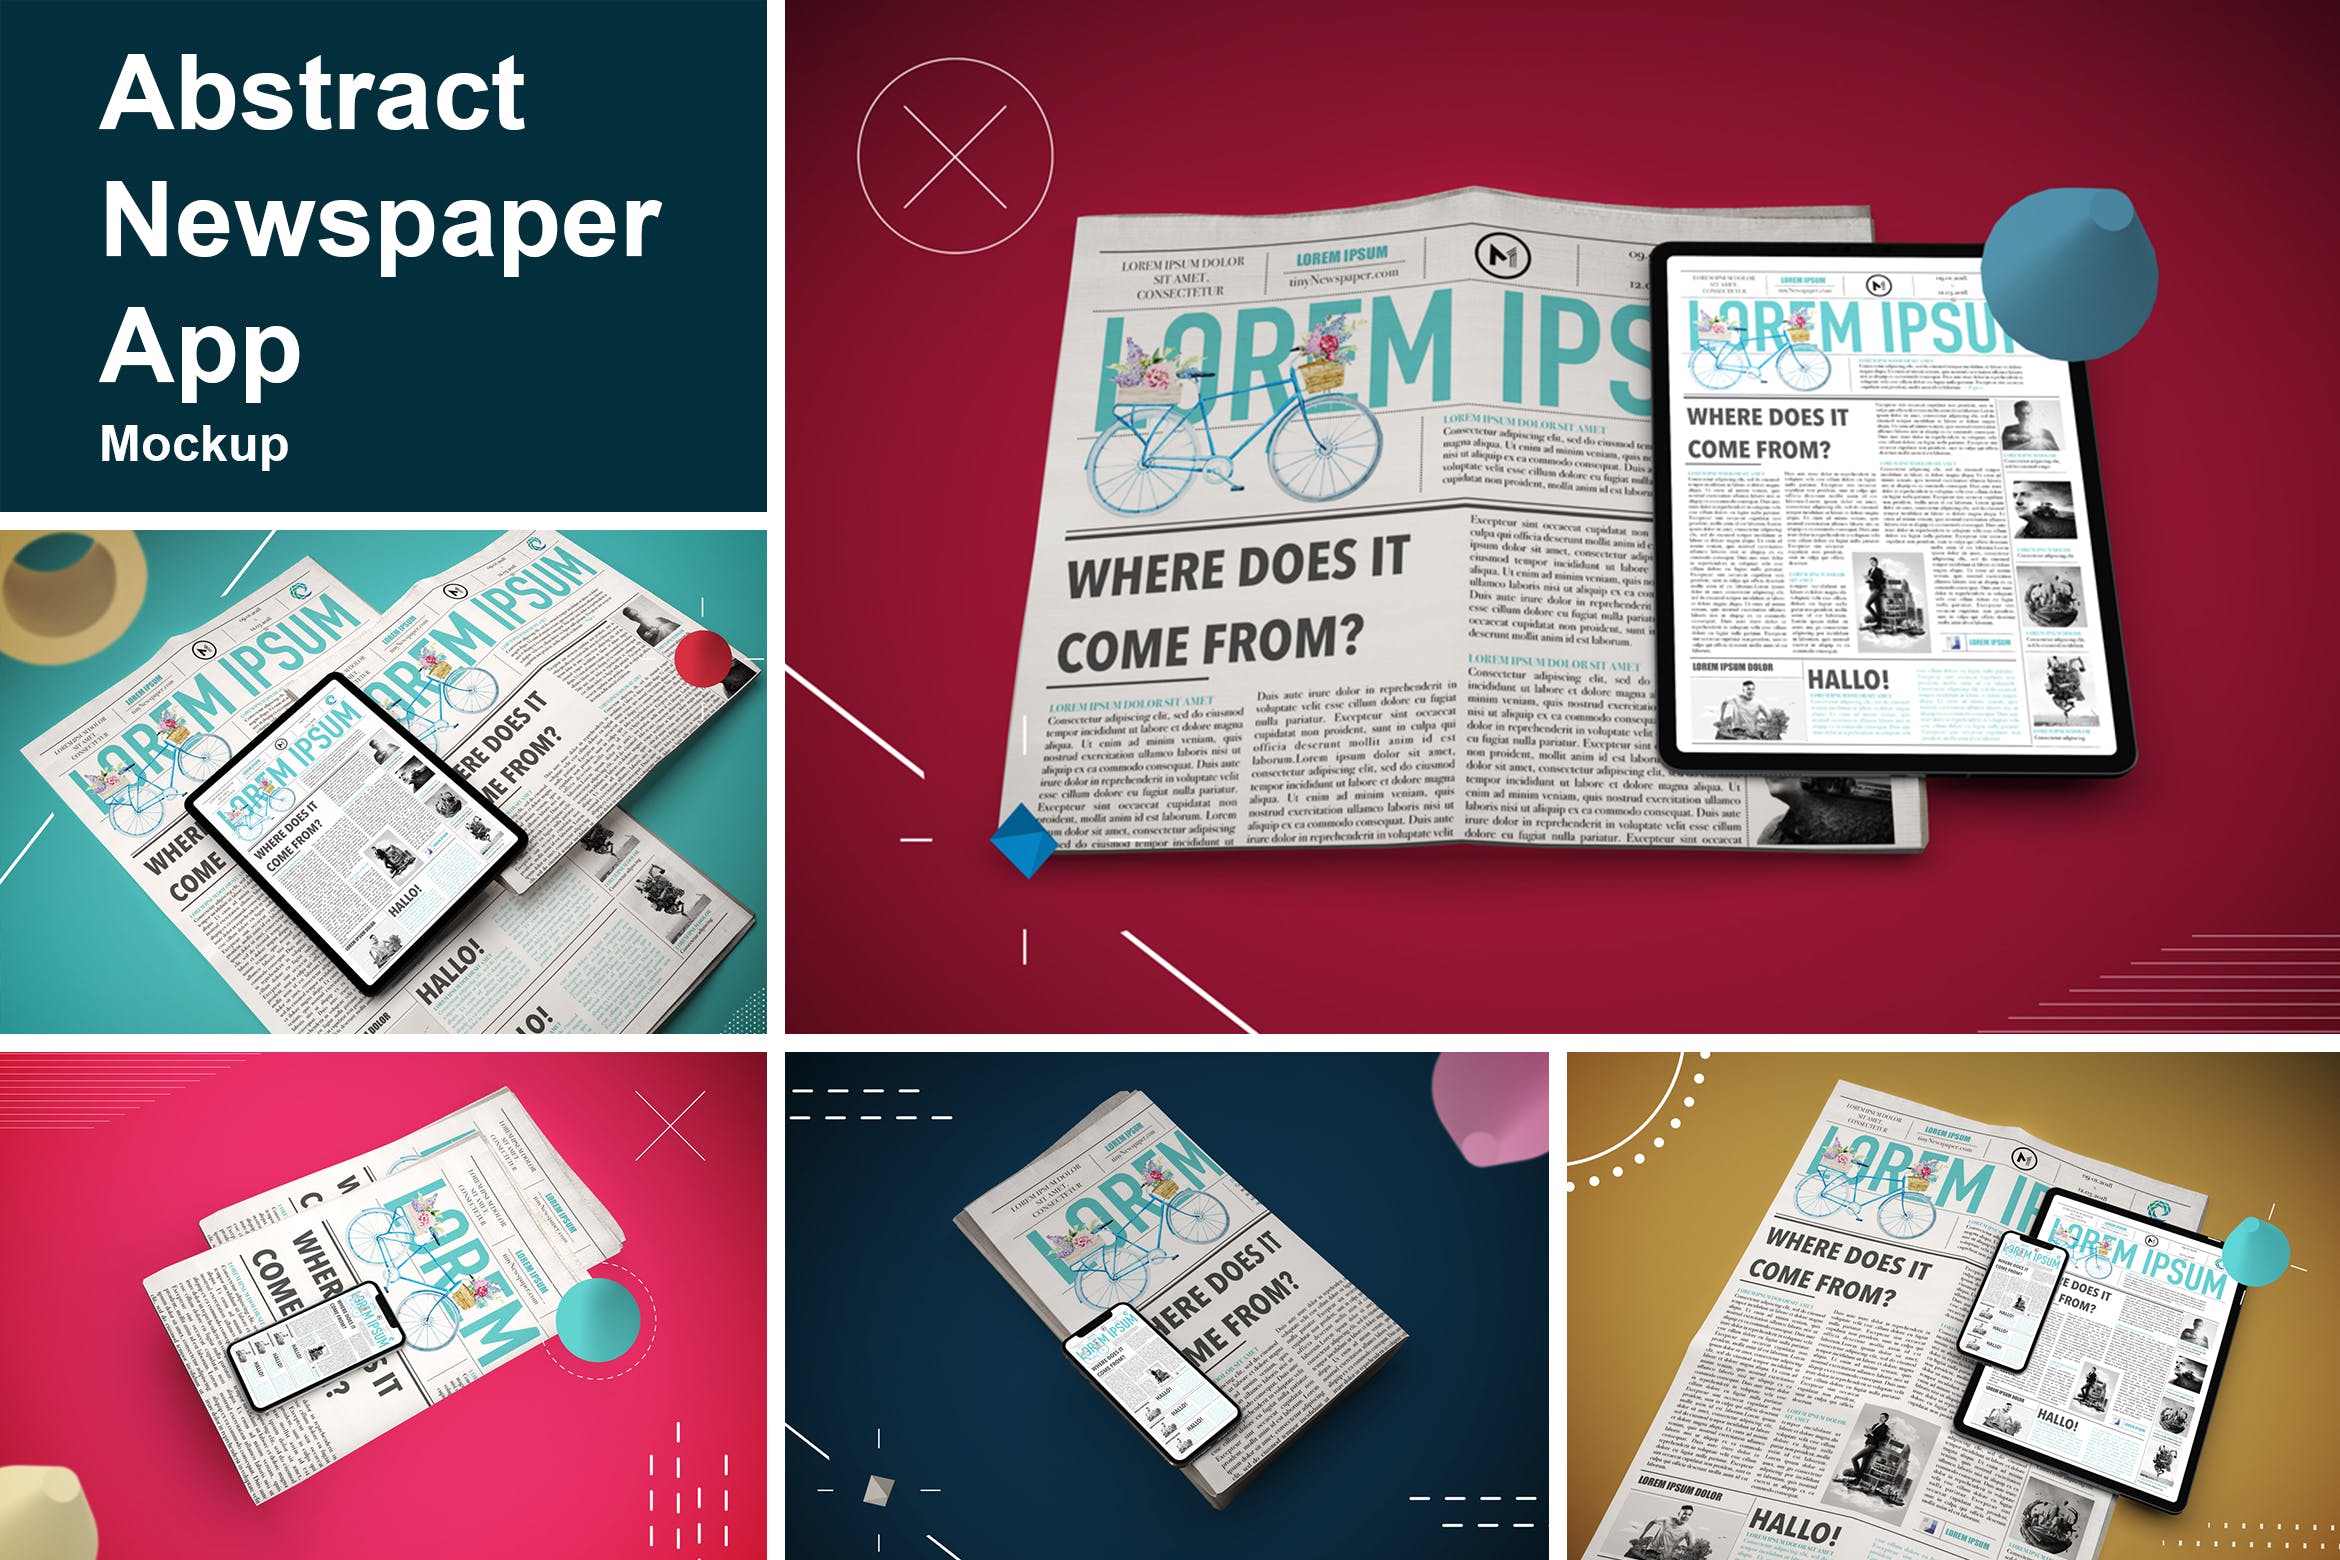 抽象设计风格报纸资讯类APP应用UI设计效果图蚂蚁素材精选样机 Abstract Newspaper App MockUp插图